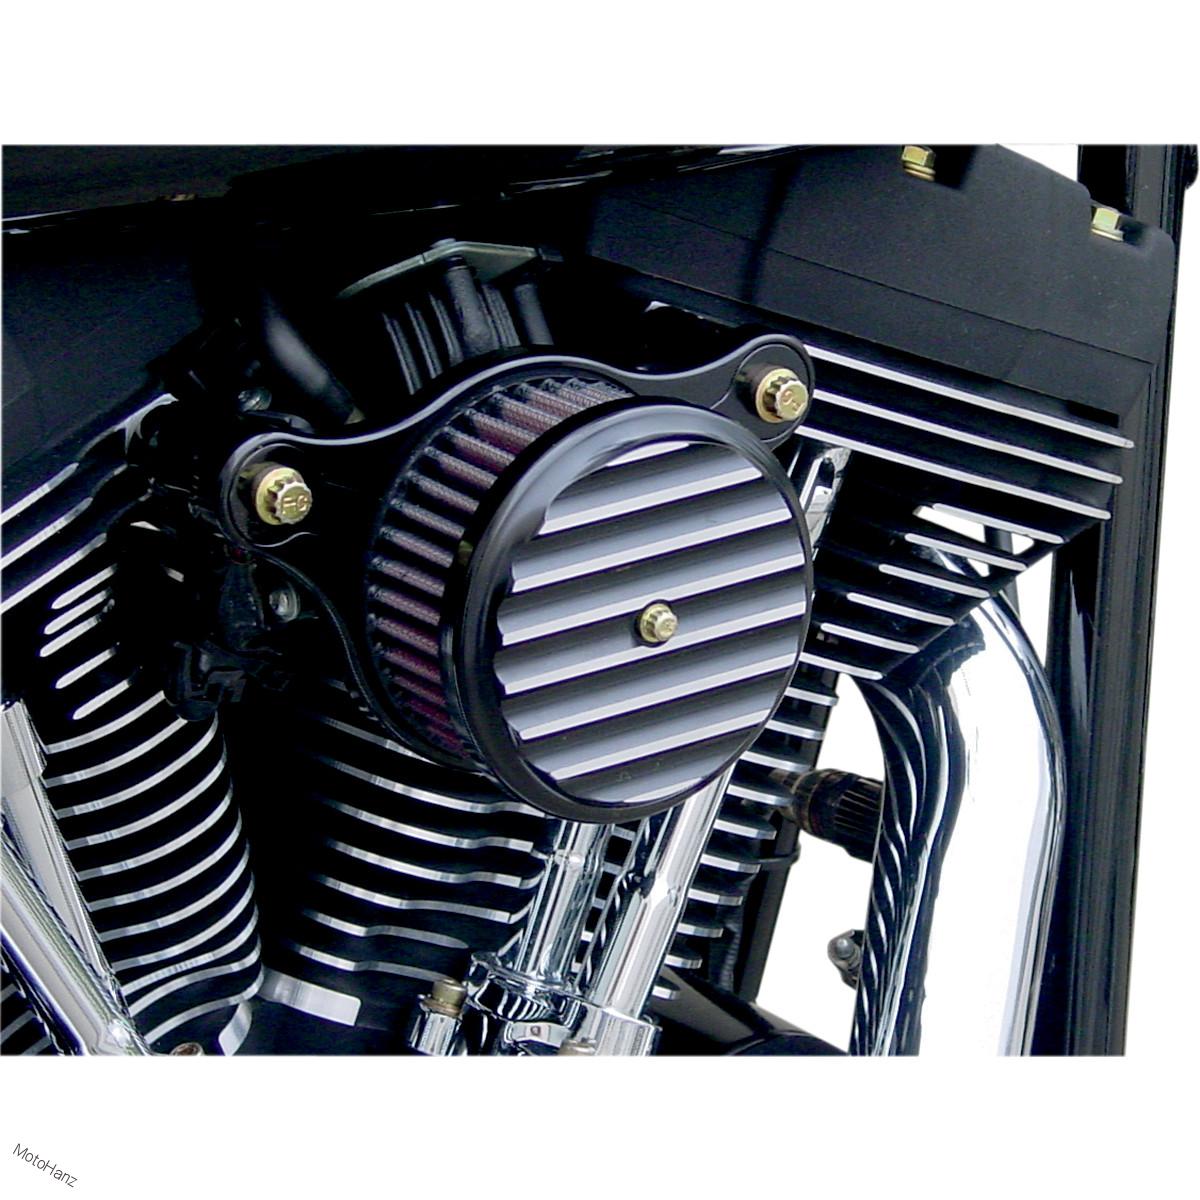 KIT sání od Joker Machine pro modely Harley Davidson XL 07-20